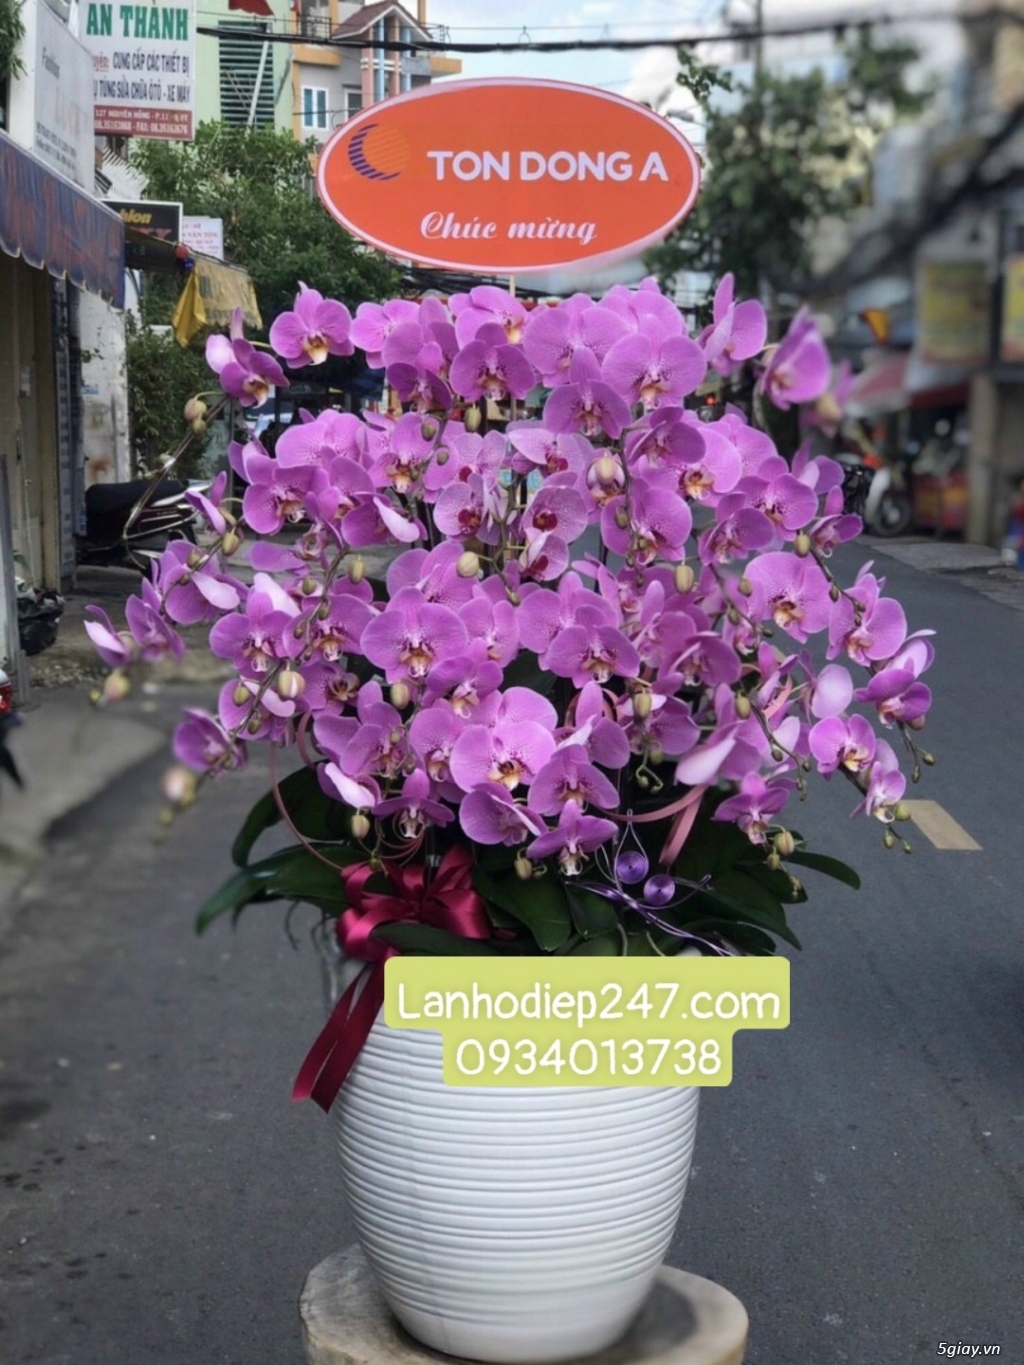 Shop hoa tươi lan hồ điệp quận 2 uy tín tphcm 0934013738 - 13